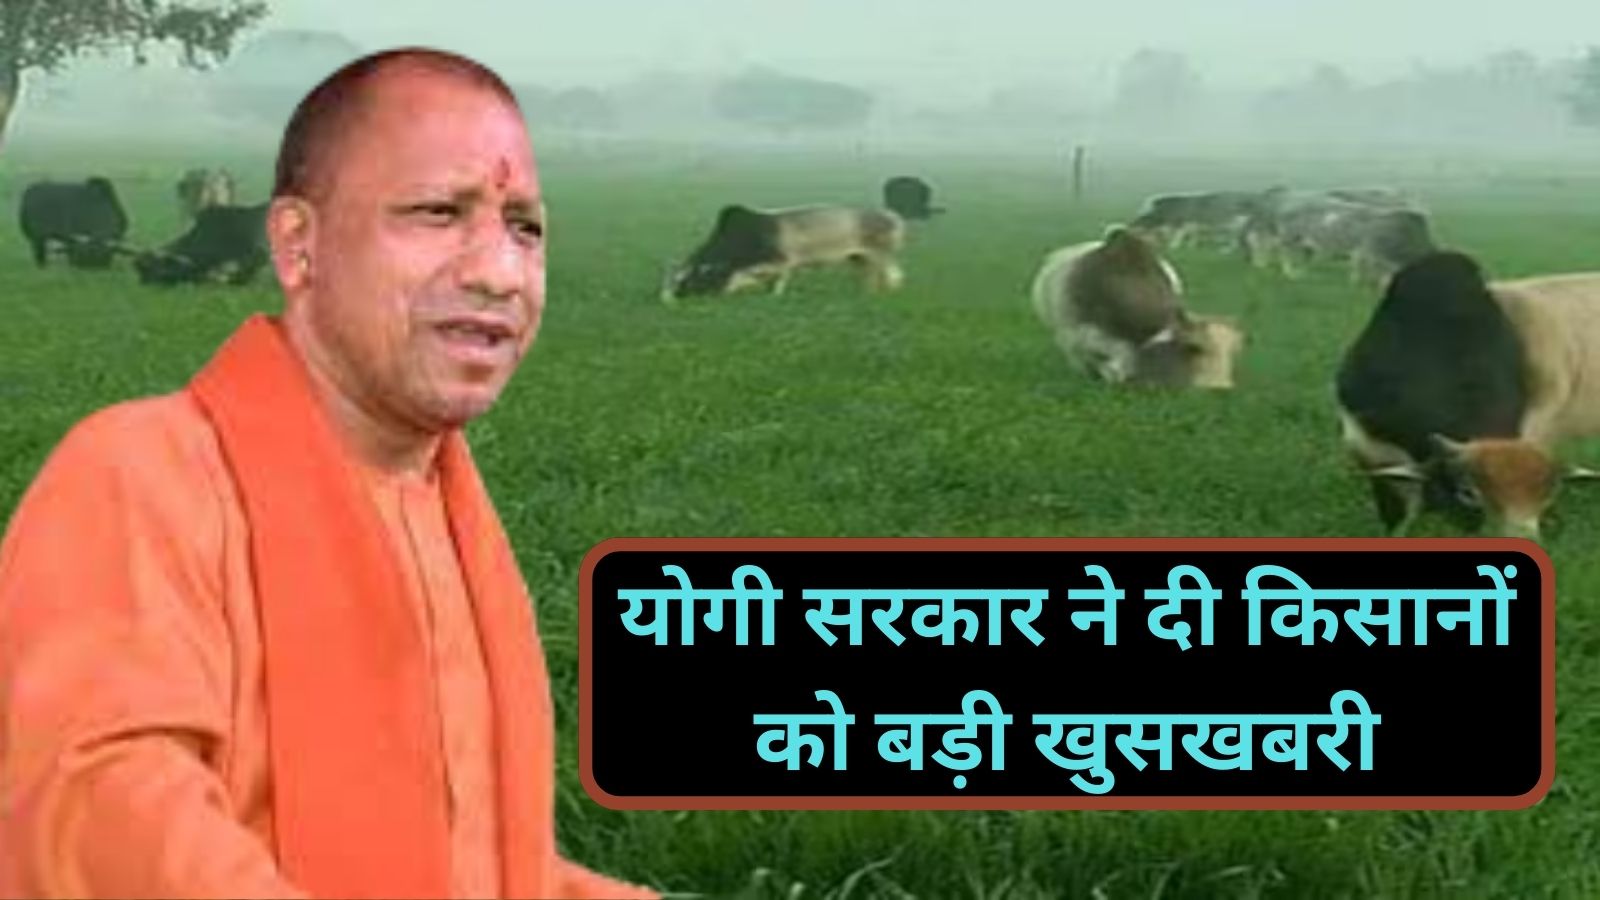 CM Khet Suraksha Yojana:योगी सरकार ने दी किसानों को बड़ी खुसखबरी, किसानों की फसल को अवारा जानवरों से बचाने के लिए शुरू की सीएम ‘खेत सुरक्षा योजना’